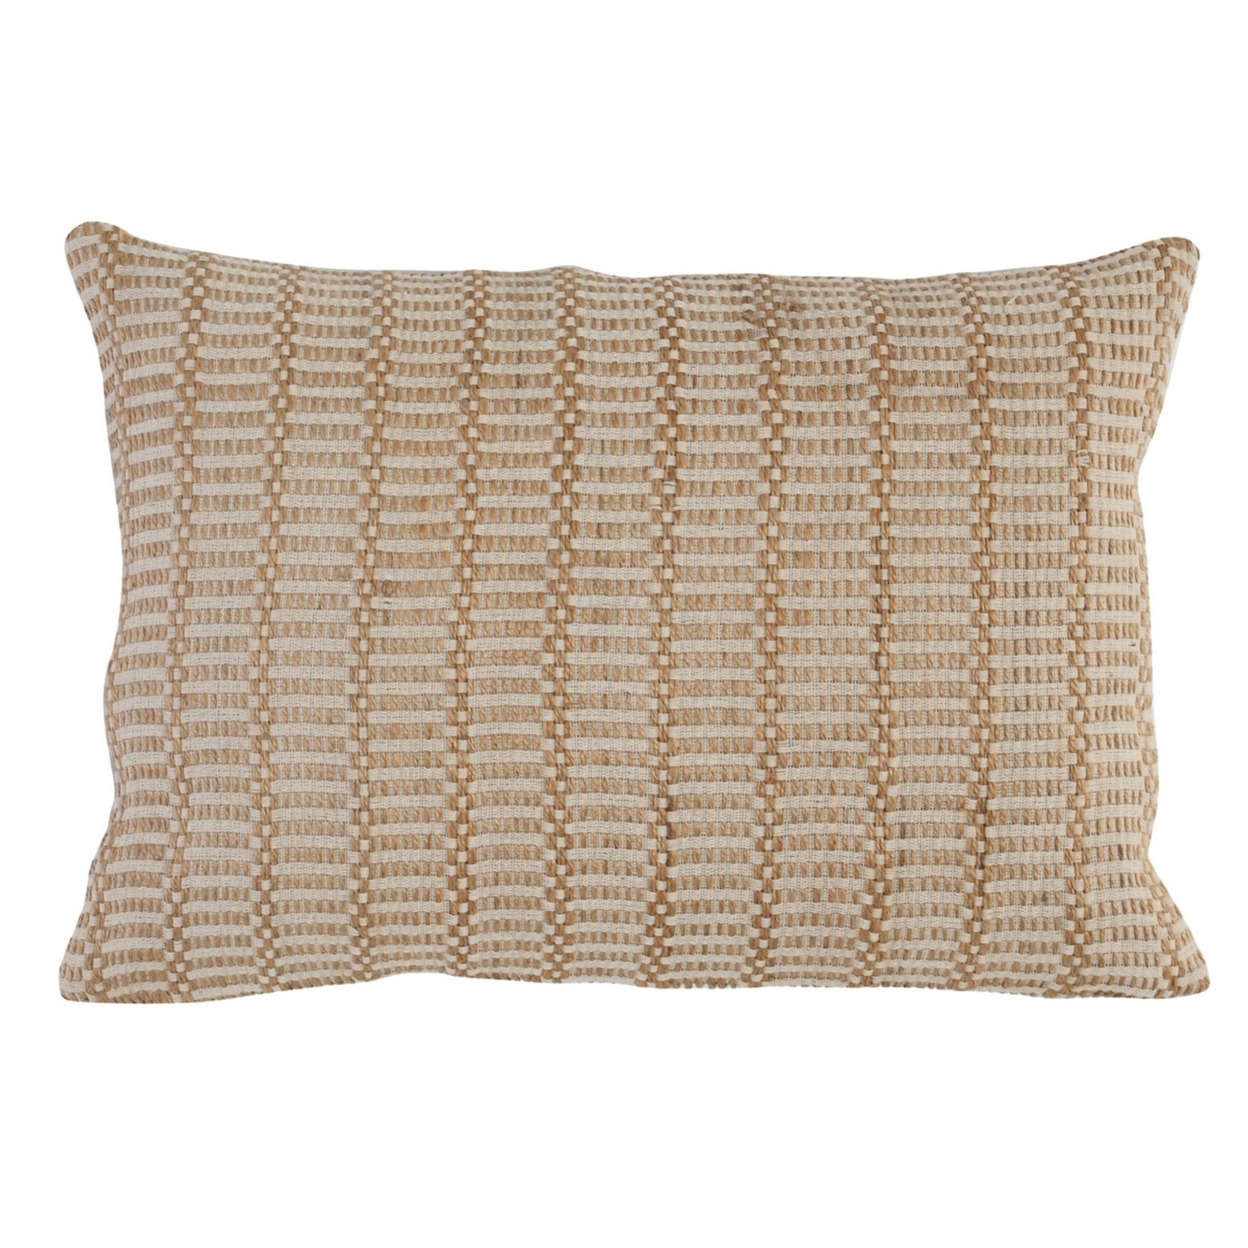 14 X 20 Lumbar Accent Throw Pillow, Basket Jute Handwoven Pattern, Beige- Saltoro Sherpi